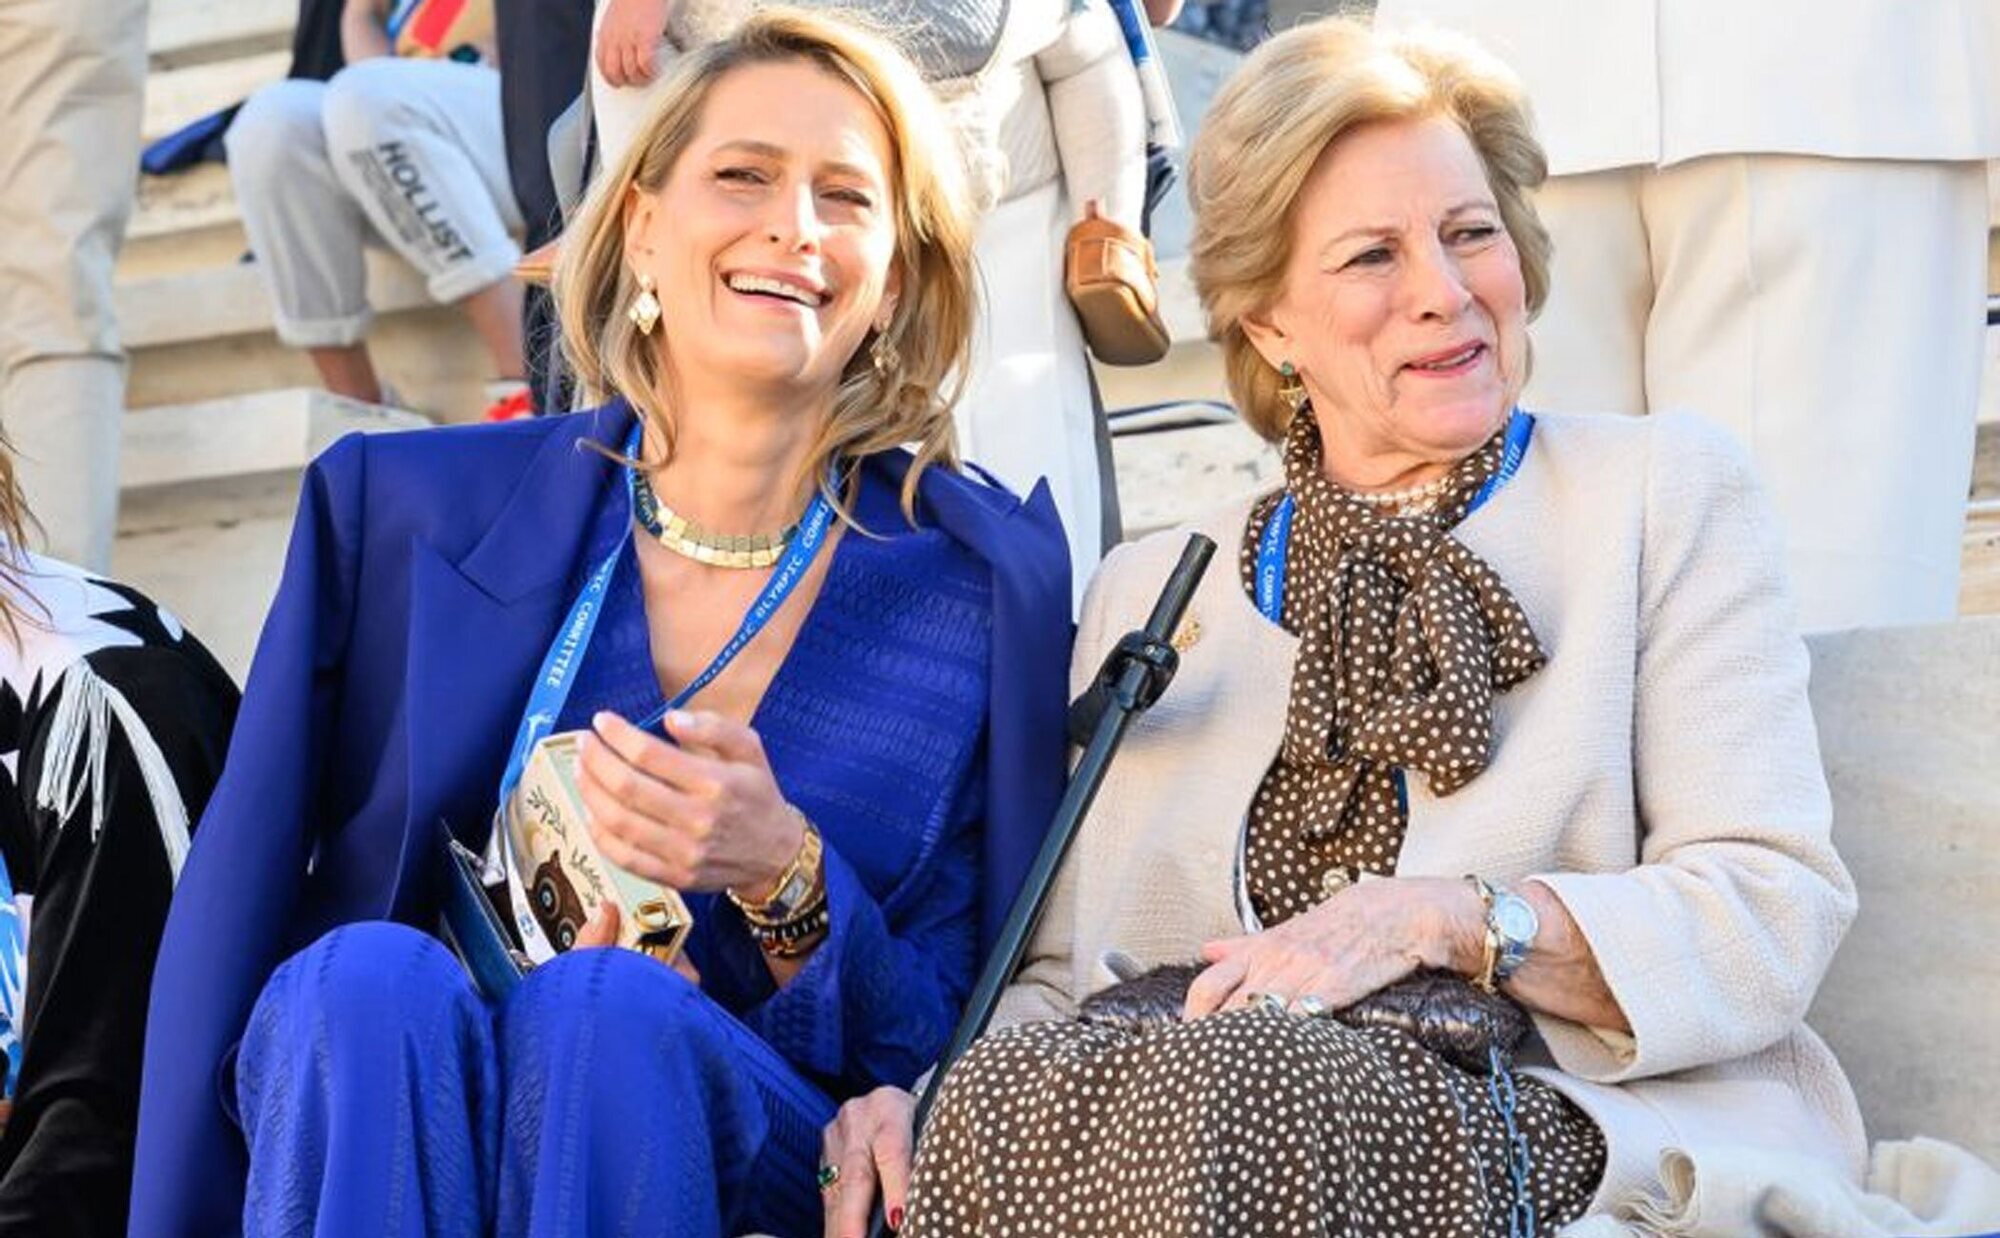 Ana María de Grecia y Tatiana Blatnik muestran que siguen siendo suegra y nuera pese a la ruptura con Nicolás de Grecia